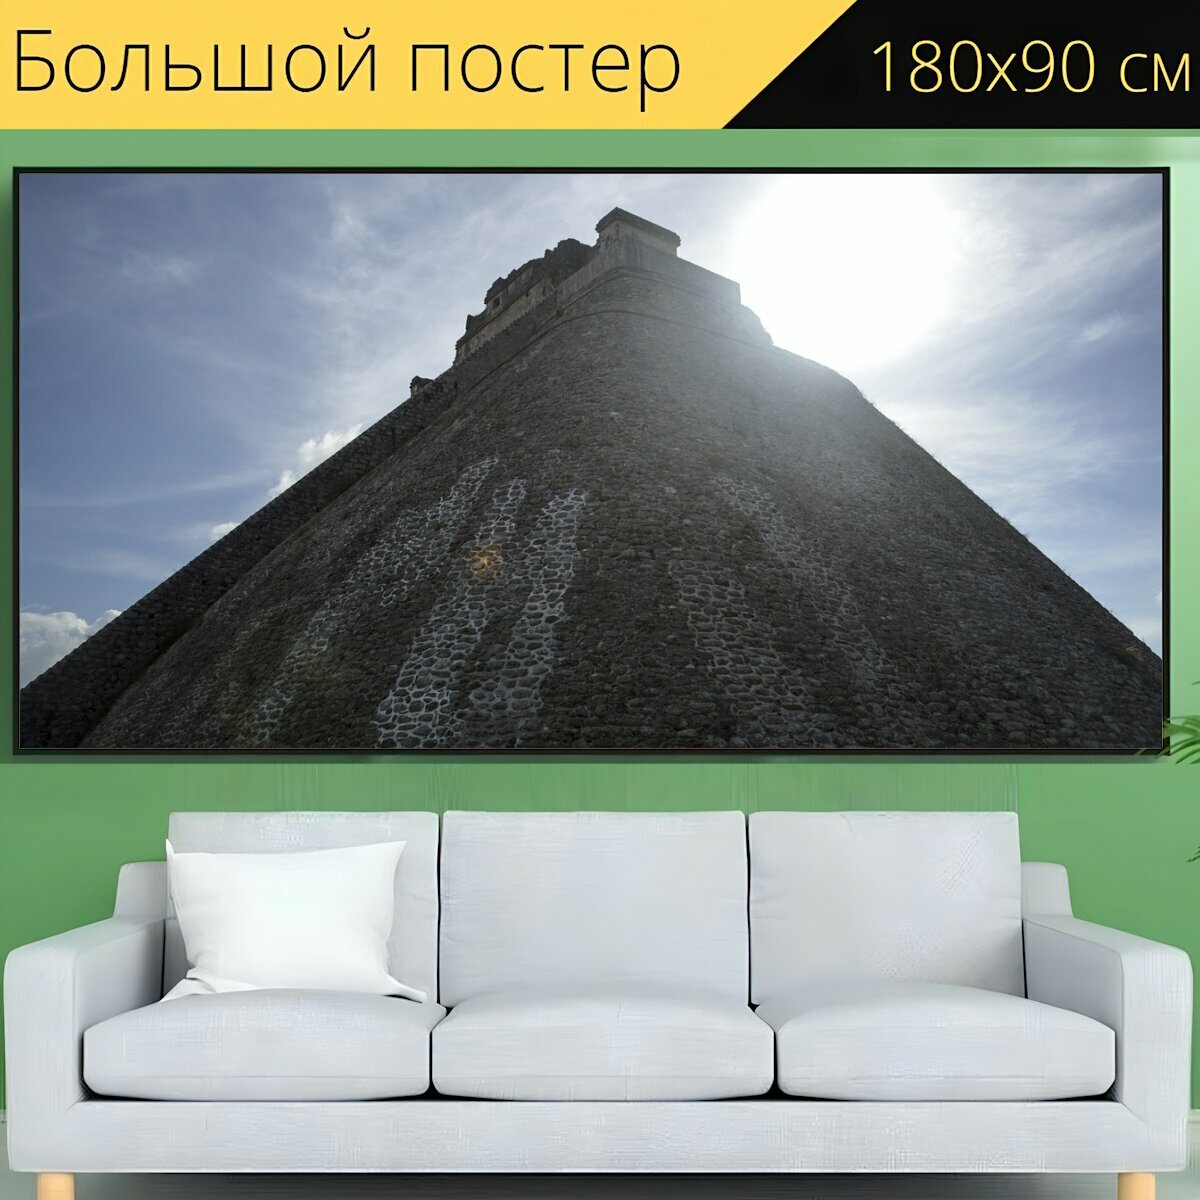 Большой постер "Пирамида, ацтеков, ушмал" 180 x 90 см. для интерьера